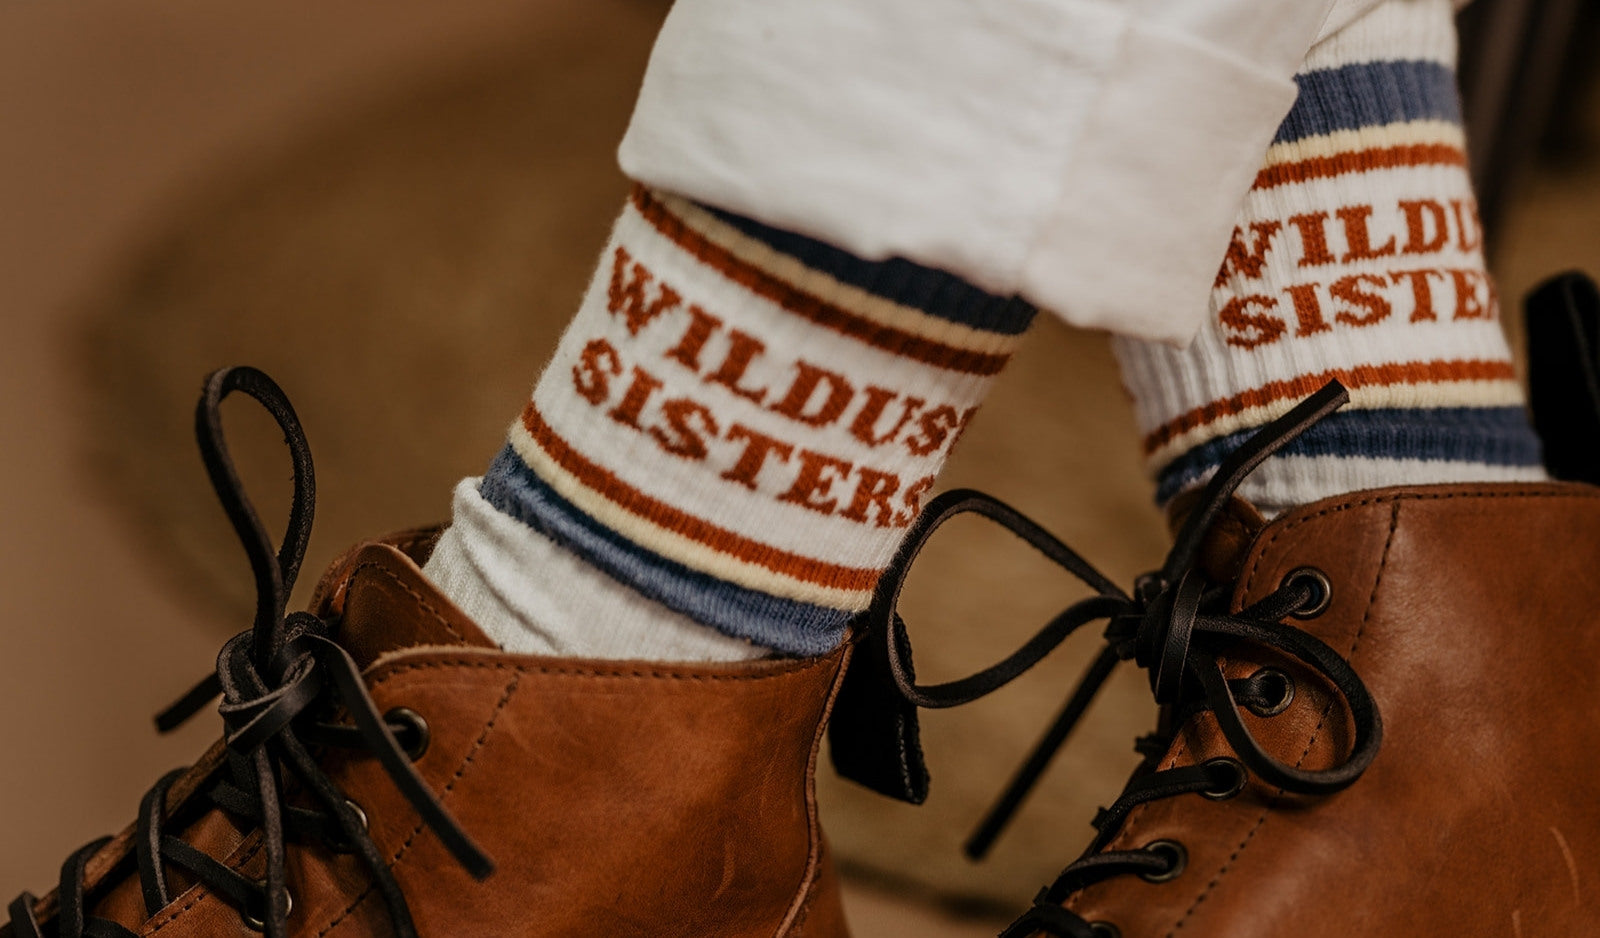 Wildust Sisters Vintage Racer socks